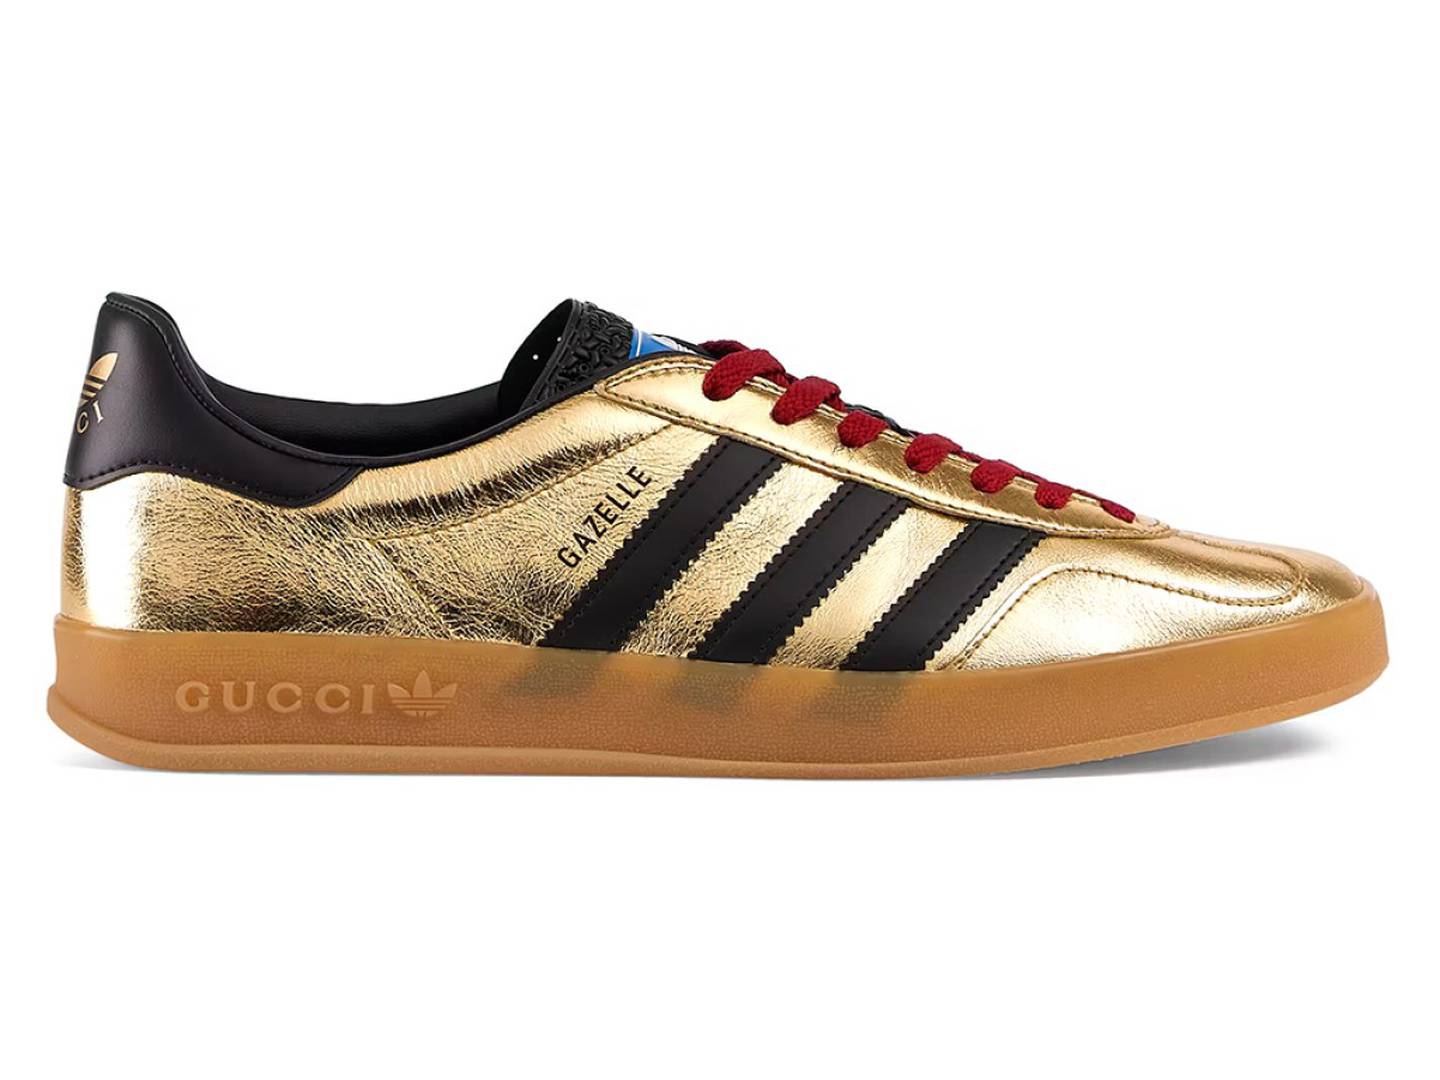 x Adidas Gazelle, lujo jugar al fútbol: el precio prohibitivo estas zapatillas te dejará asombrado – FayerWayer